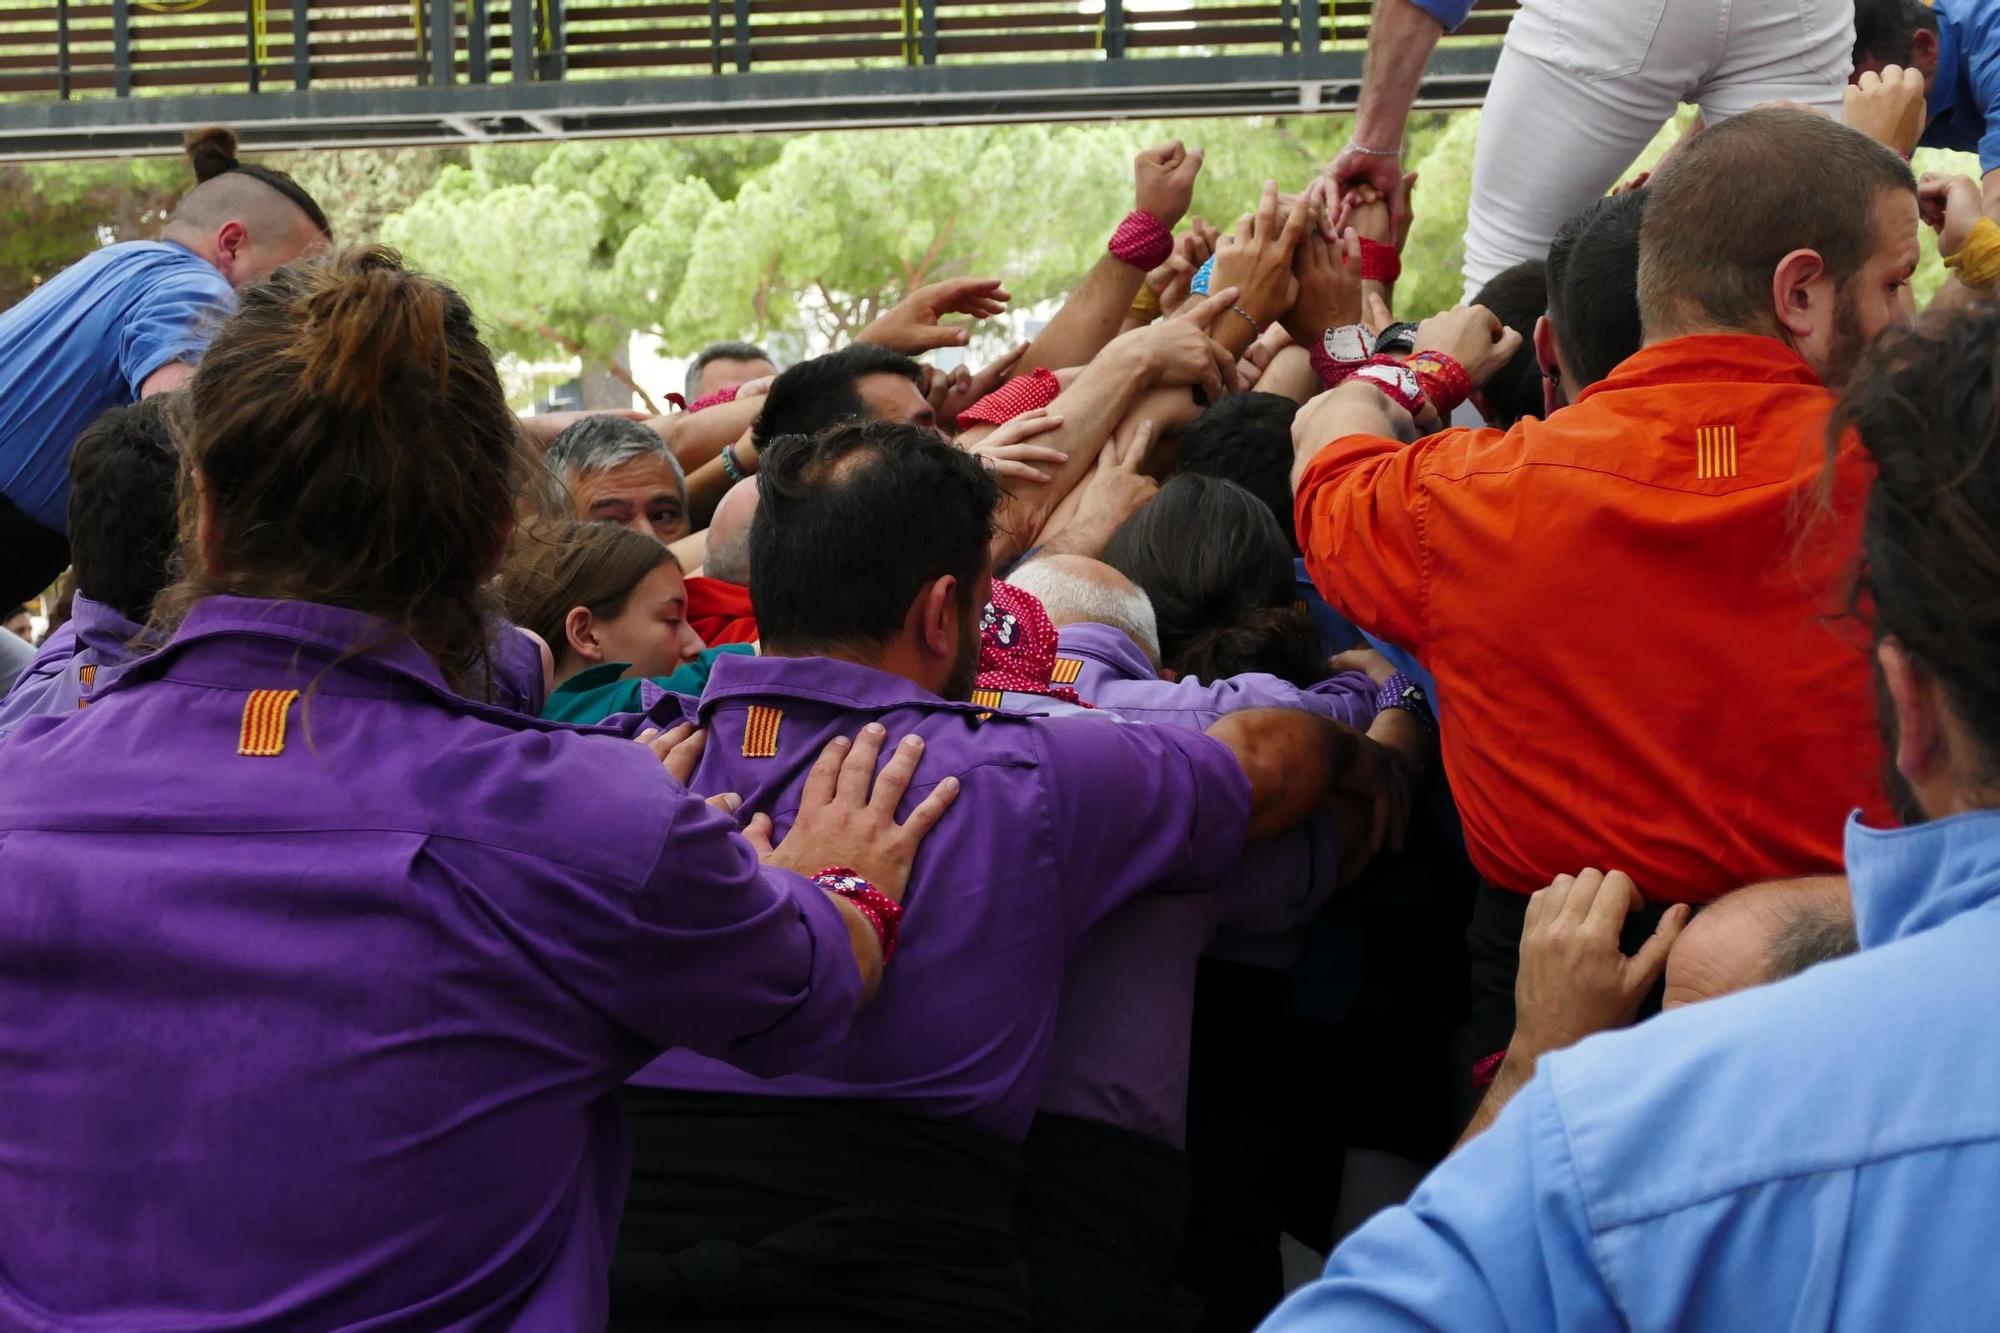 La Colla Castellera de Figueres aixeca el primer pilar de 5 per sota de la seva història a la Diada de Sant Pere